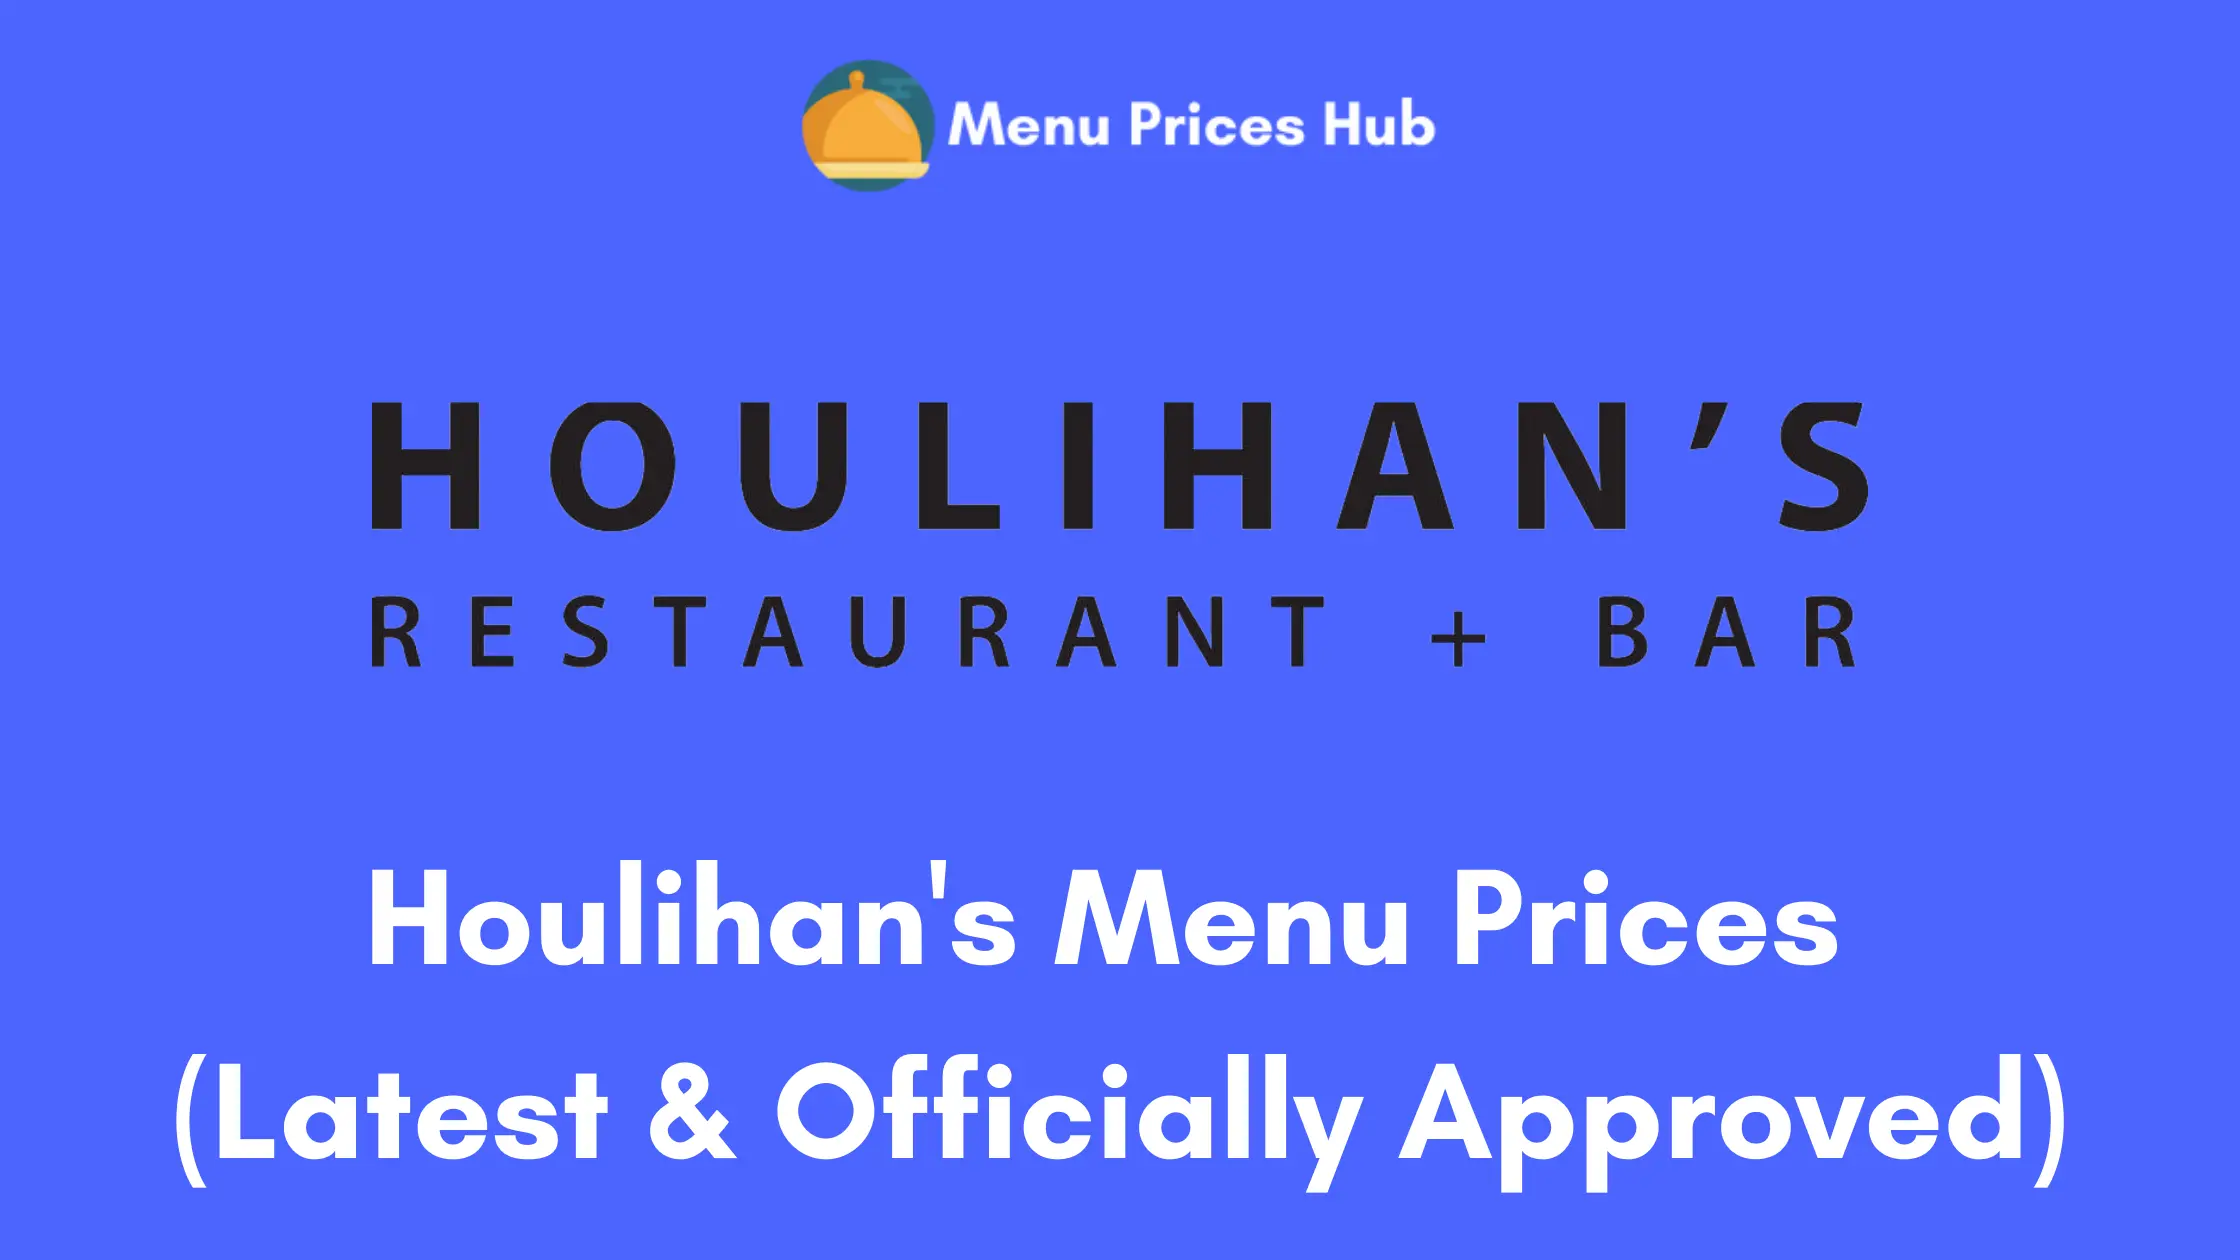 Houlihan’s Menu Prices